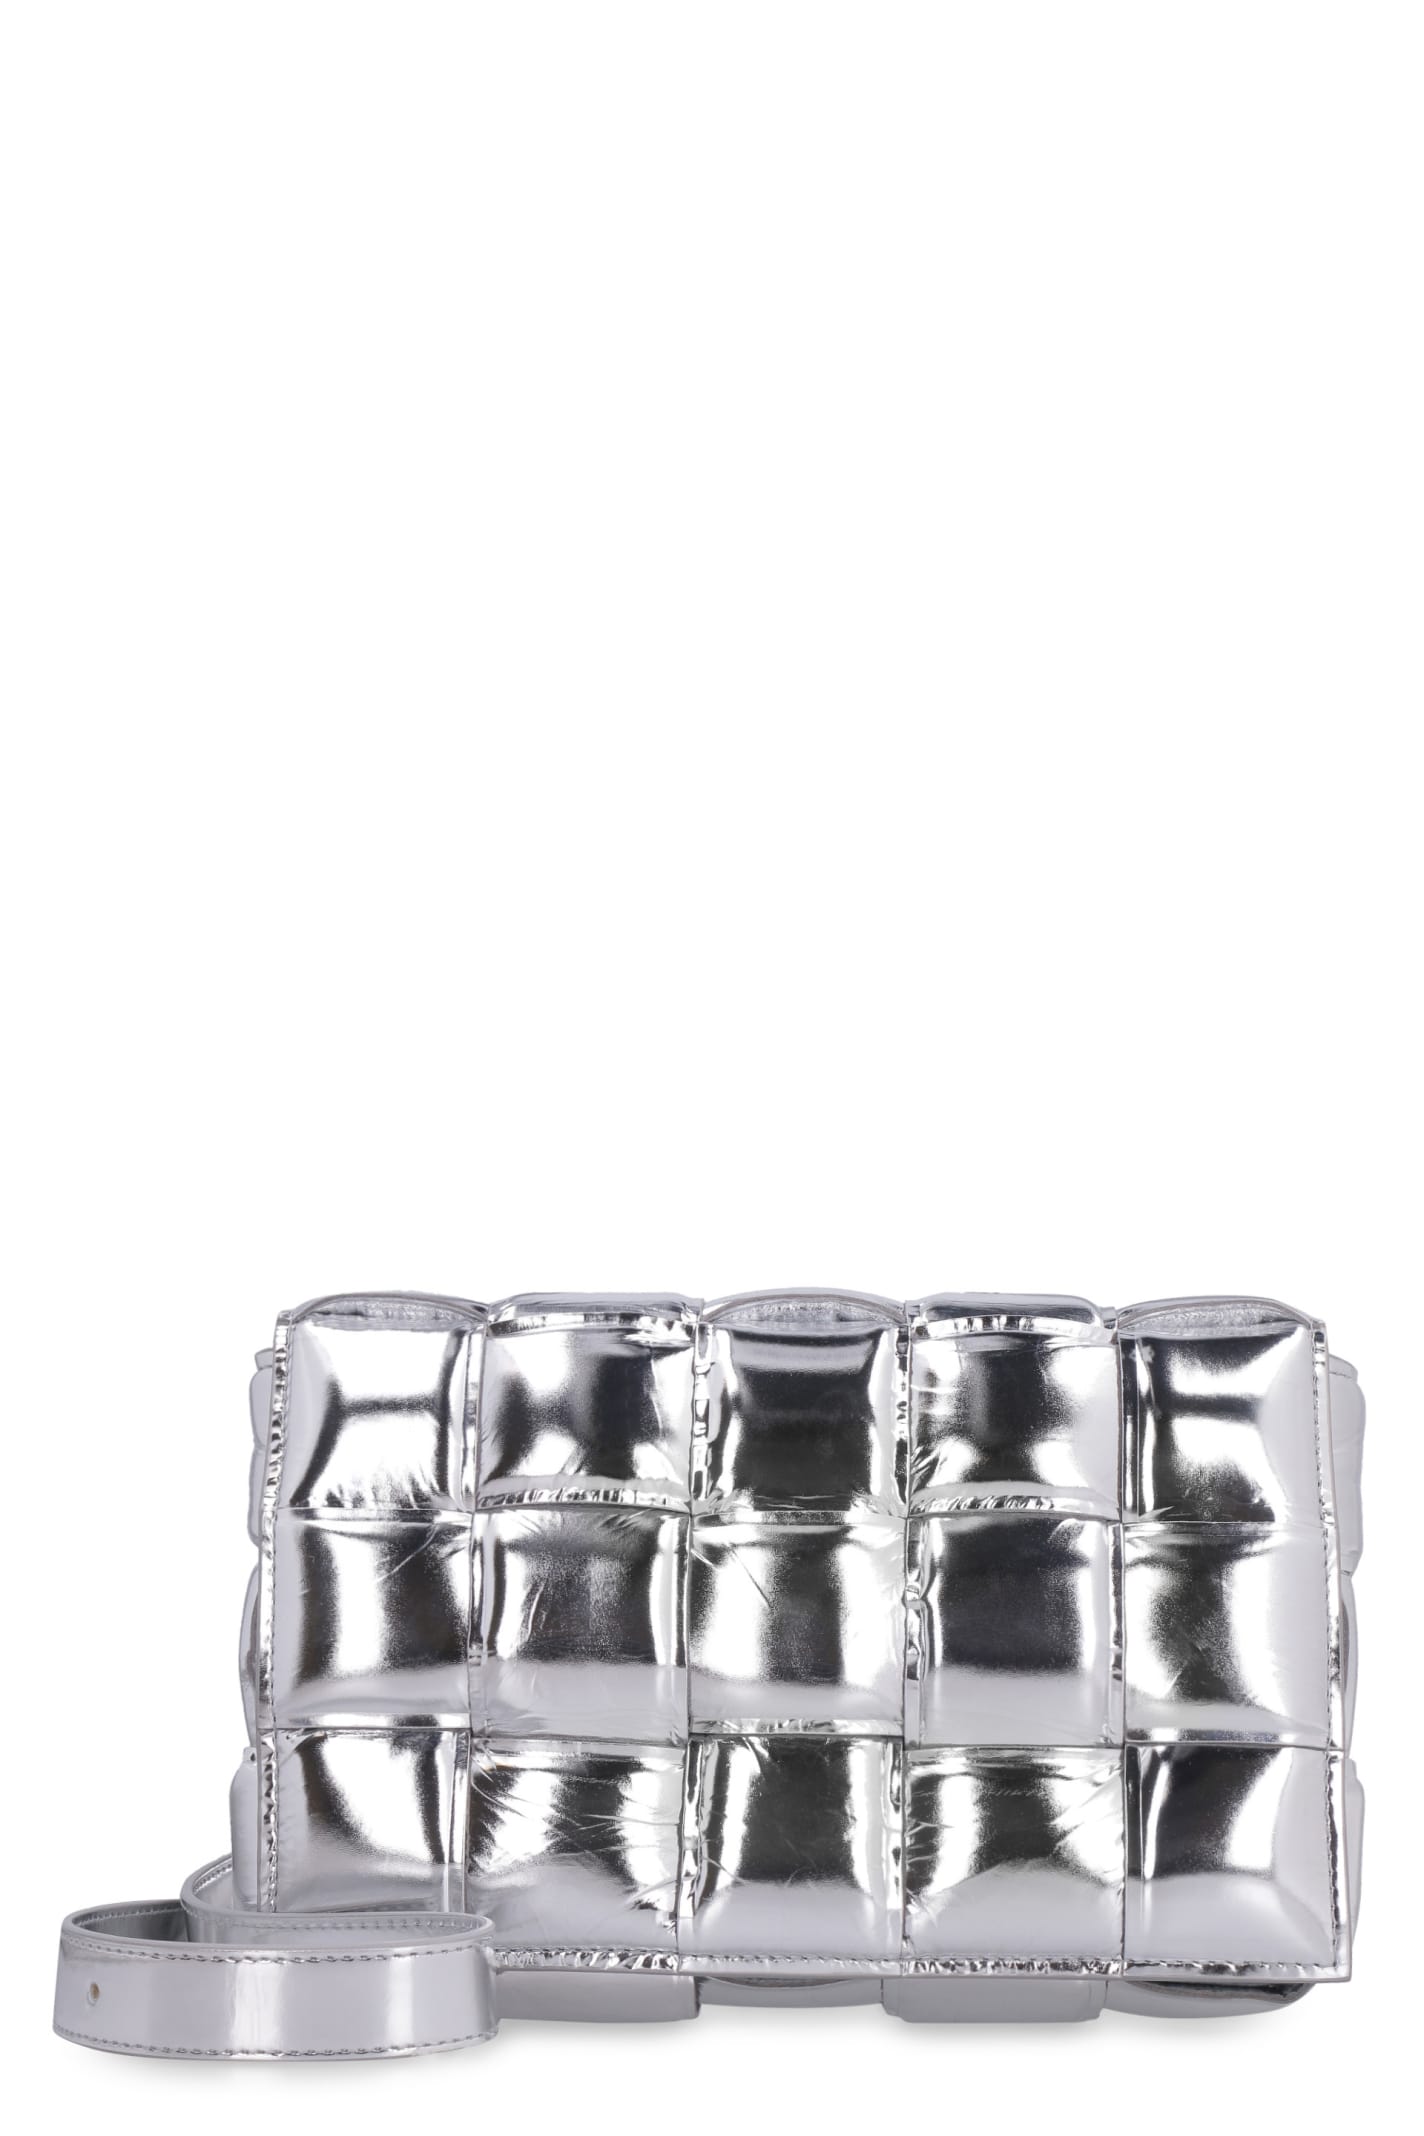 Bottega Veneta Padded Cassette Crossbody Bag in Metallic Silver